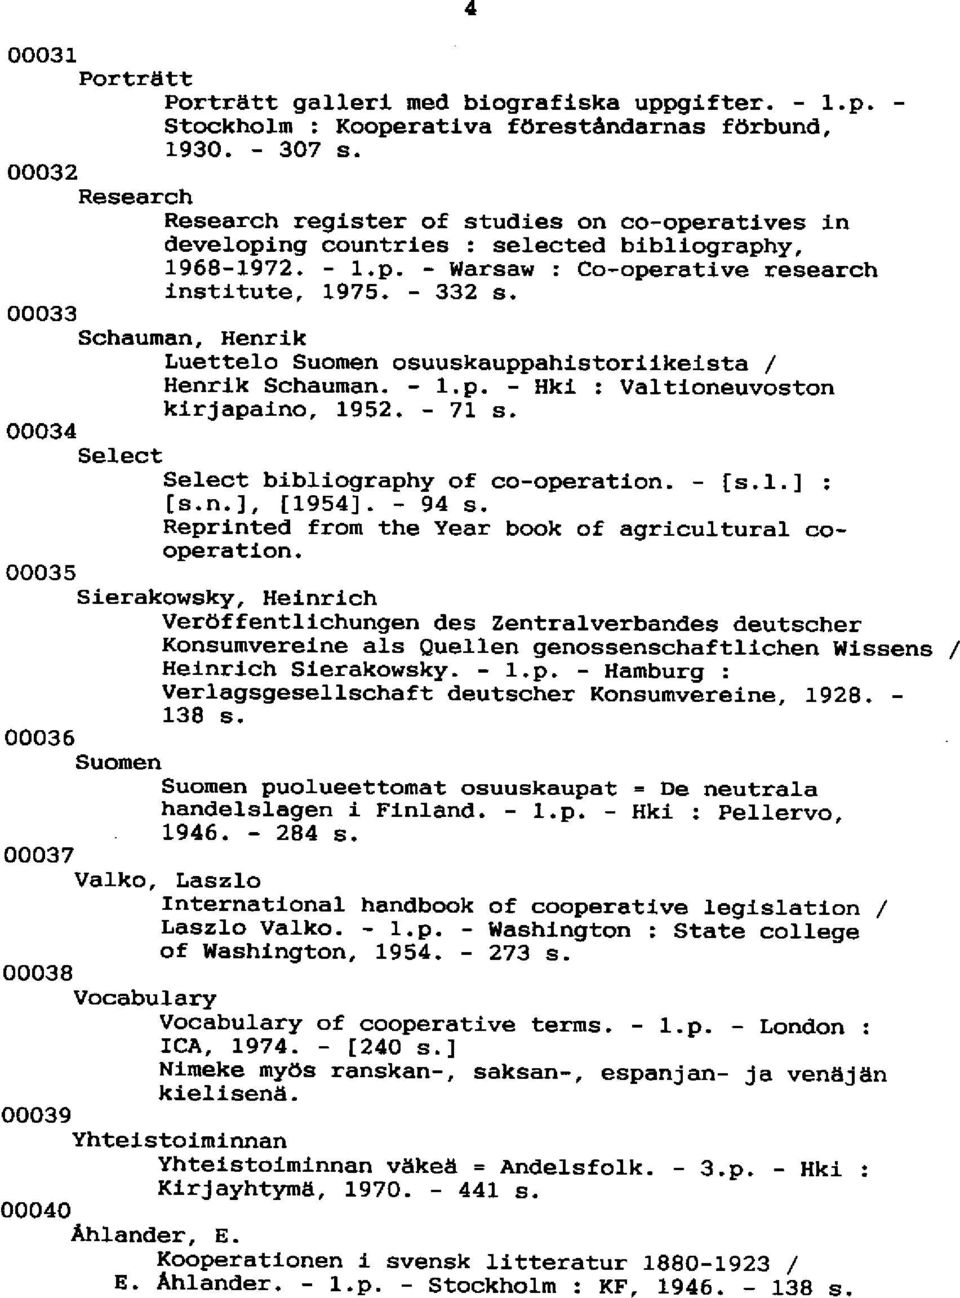 ooo33 Schauman, Henrik Luettelo Suornen osuuskauppahistorllkelsta / Henrlk Schaunan. - 1.p. - Hki : Valtioneuvoston kirjapatno, 1952. - 71. s. ooo34 SelectSelect btbliography of co-operation. - [s.1.] : ls.